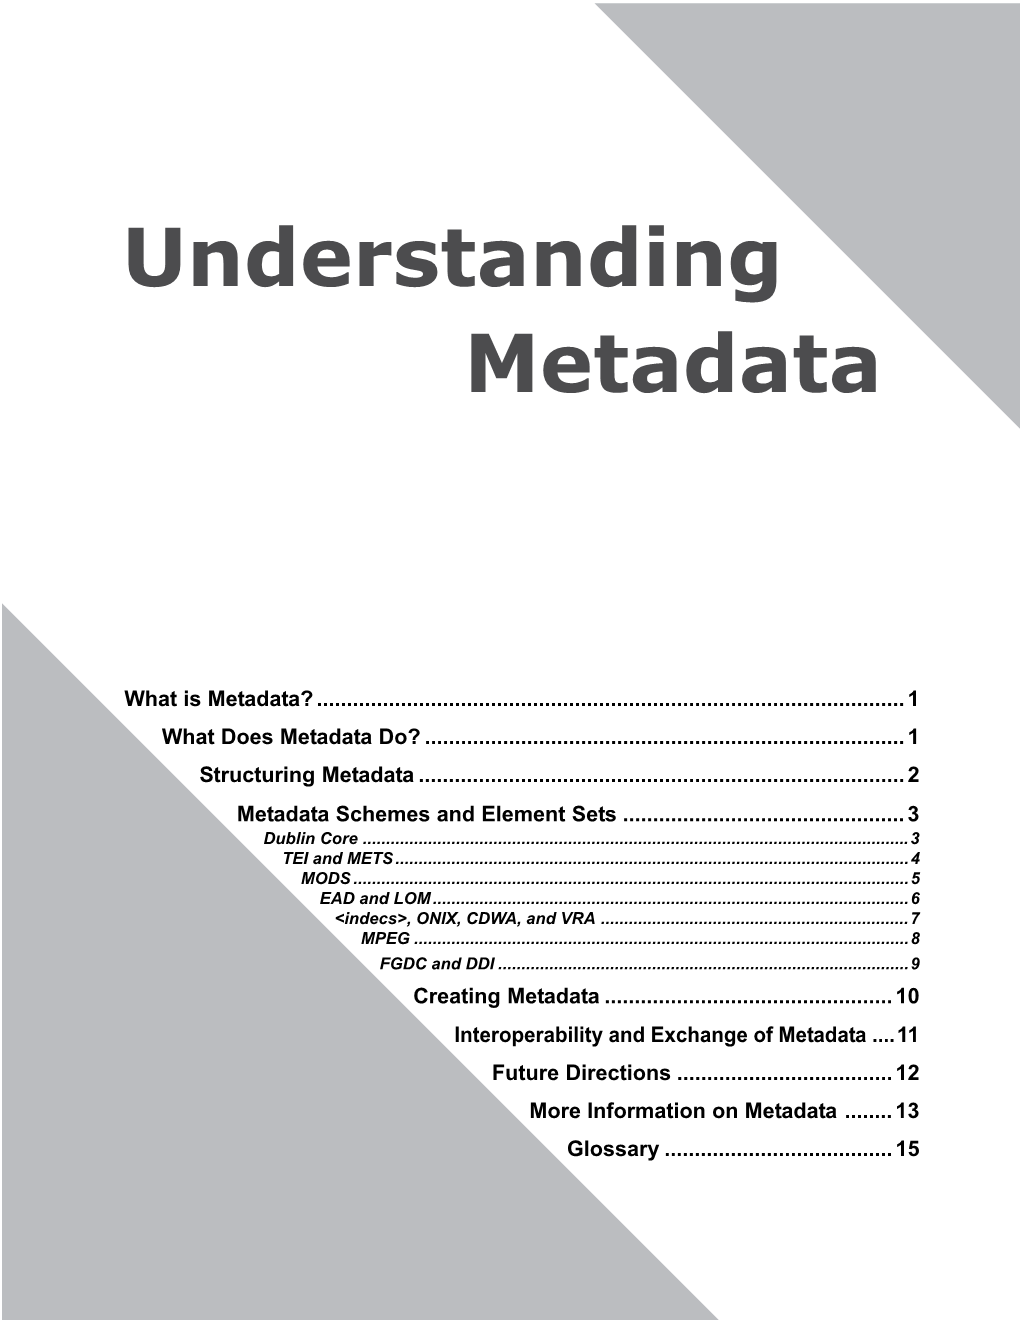 Understanding Metadata